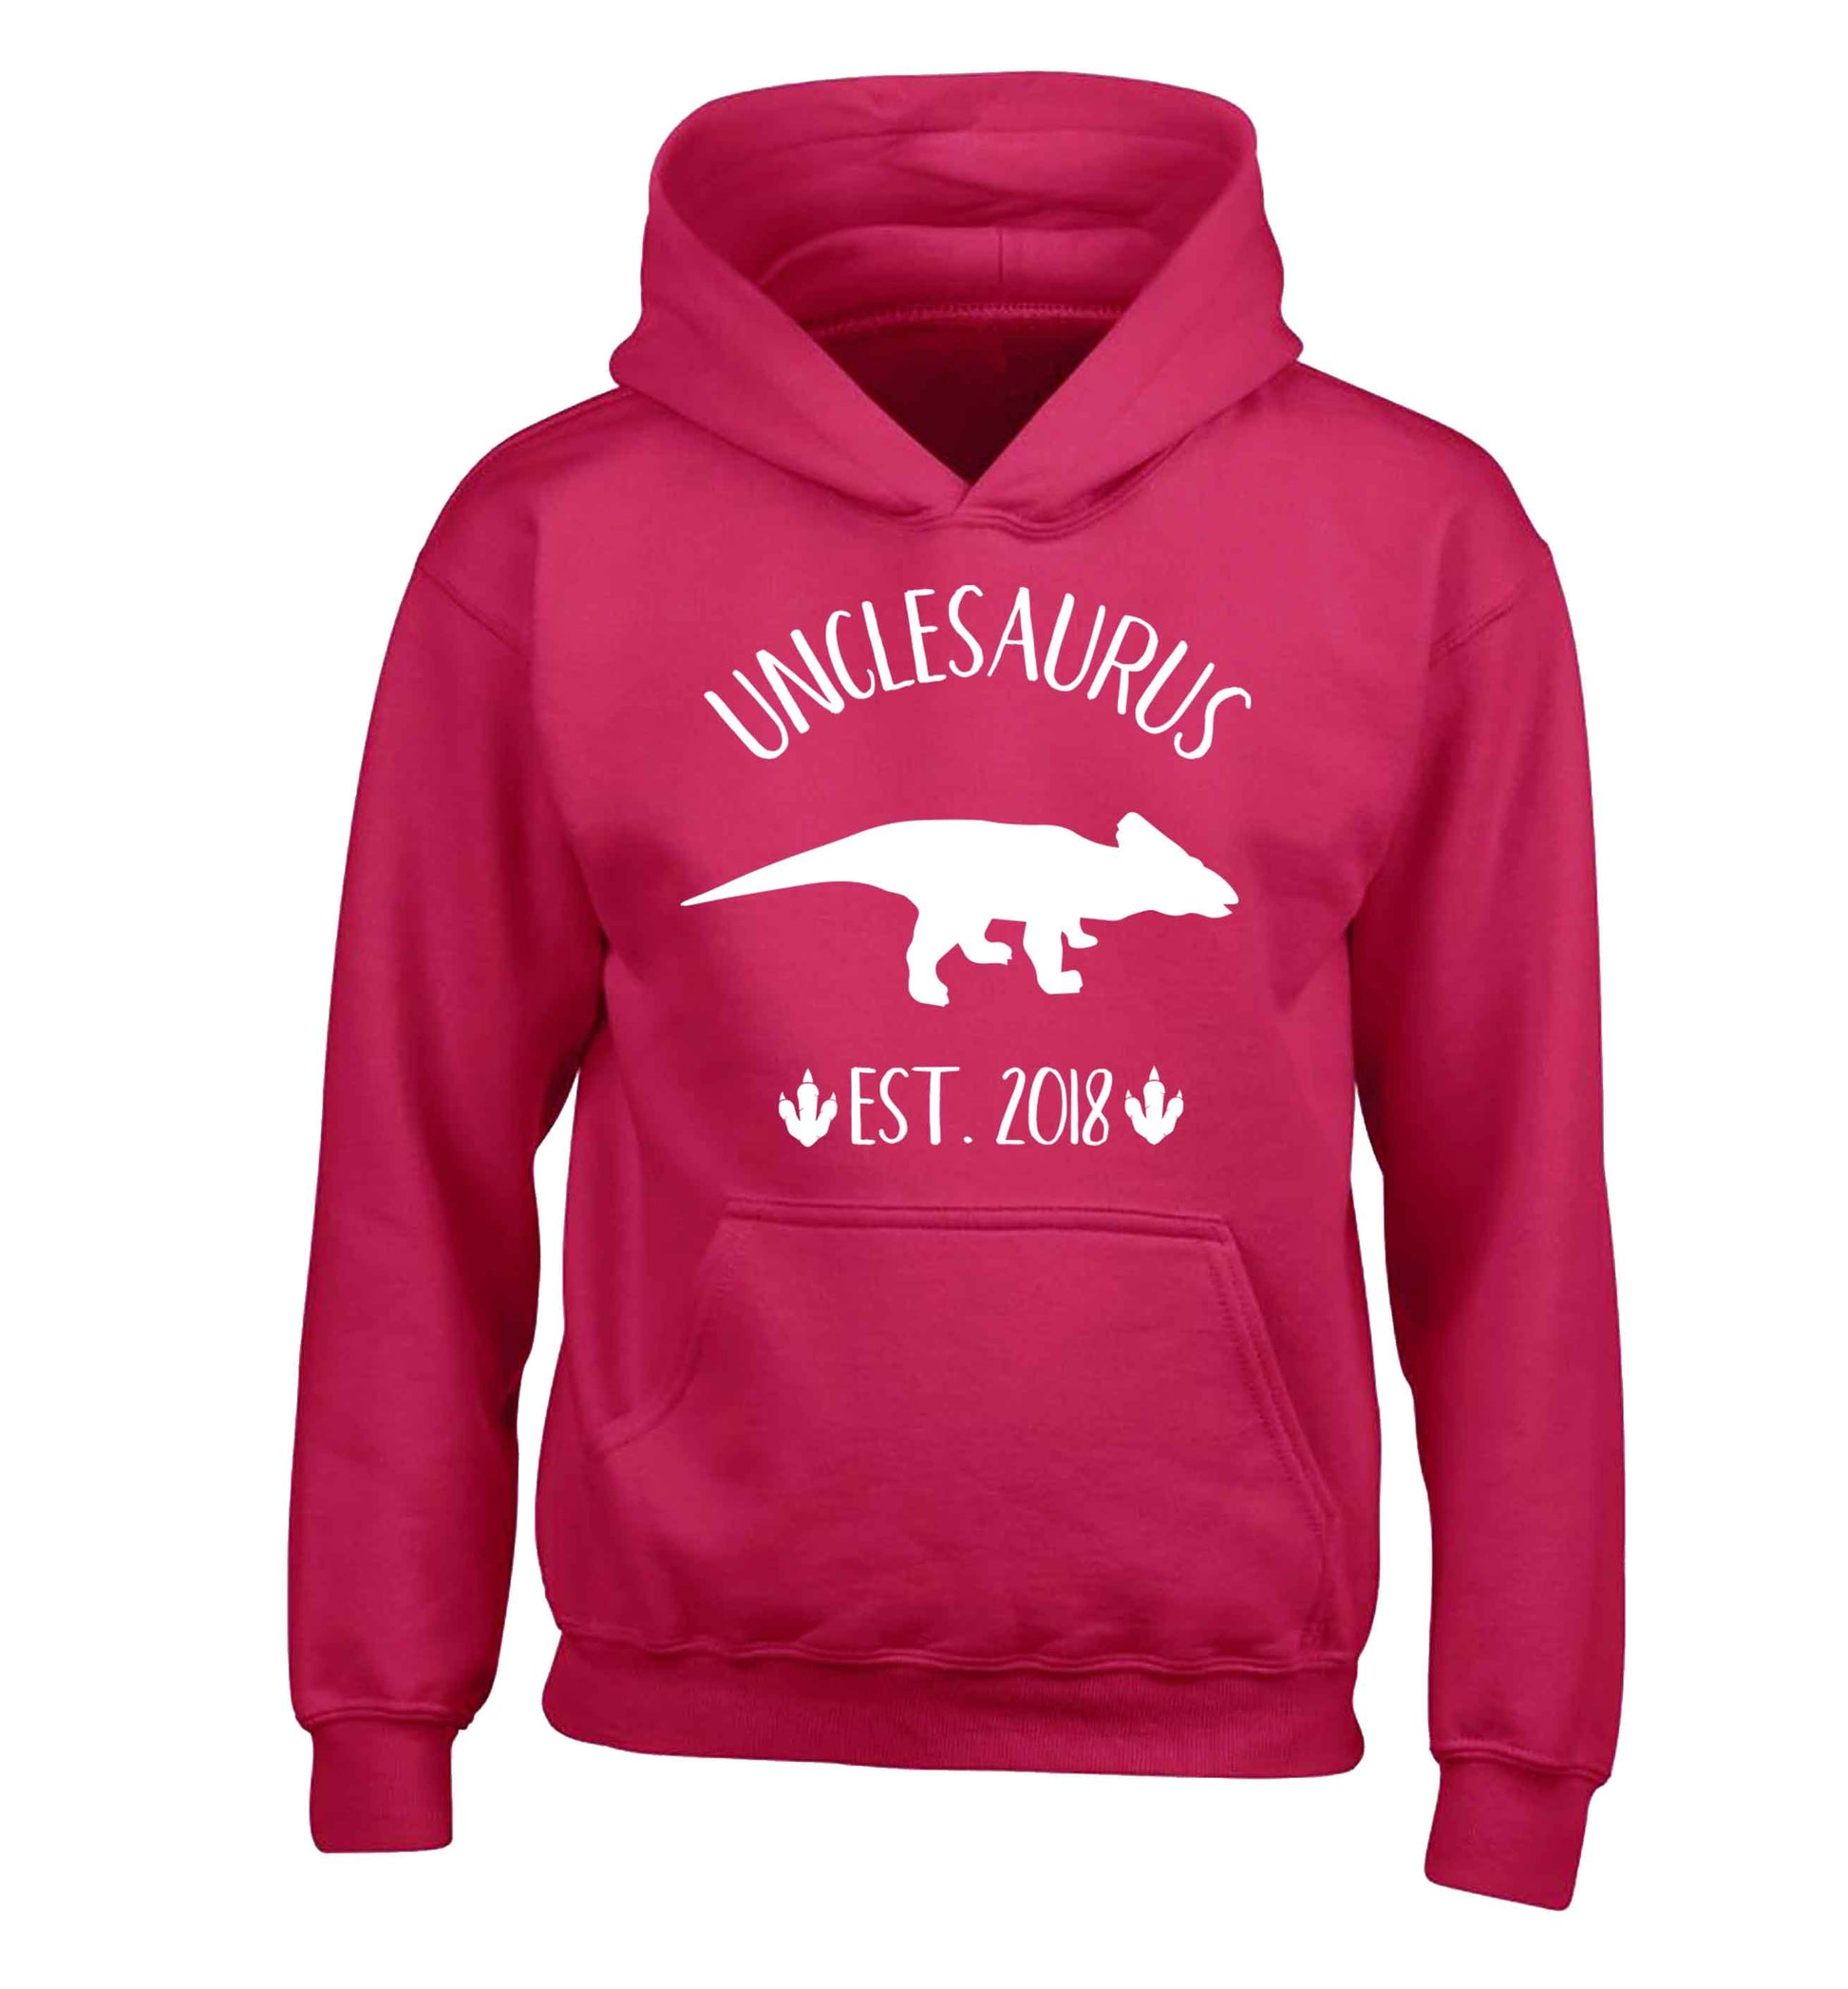 Personalised unclesaurus since (custom date) children's pink hoodie 12-13 Years